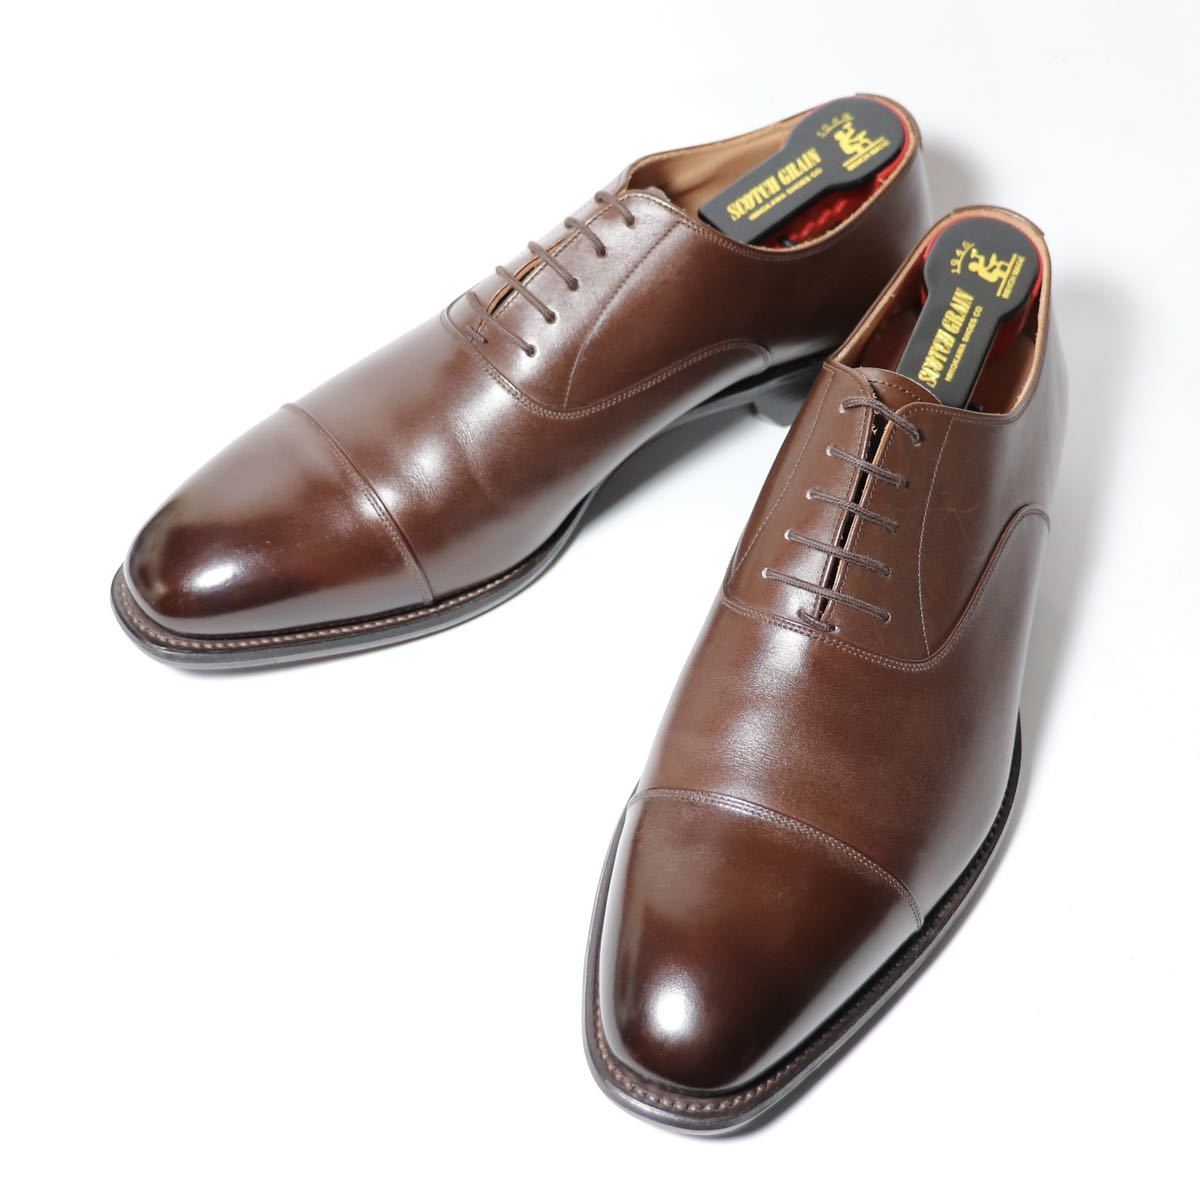 “試着程度品” SCOTCH GRAIN スコッチグレイン ODESSA オデッサ 26.5cm E ベガノカーフ ダークブラウン 916DBR シューキーパー付 革靴